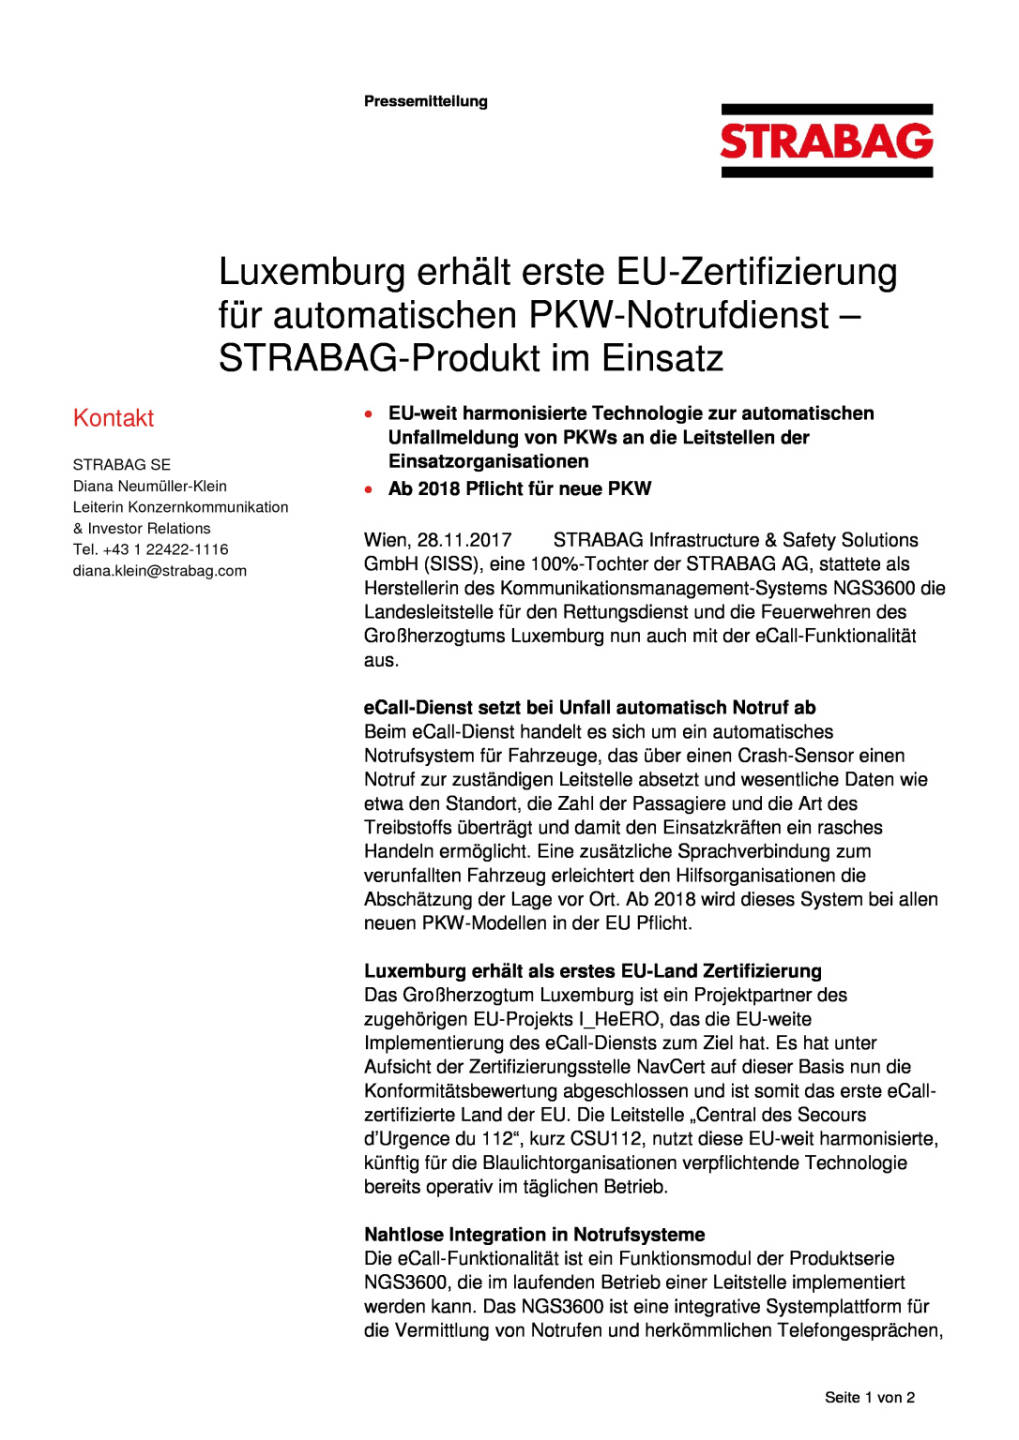 Strabag-Produkt im Einsatz: Luxemburg erhält erste EU-Zertifizierung für automatischen PKW-Notrufdienst, Seite 1/2, komplettes Dokument unter http://boerse-social.com/static/uploads/file_2403_strabag-produkt_im_einsatz_luxemburg_erhalt_erste_eu-zertifizierung_fur_automatischen_pkw-notrufdienst.pdf